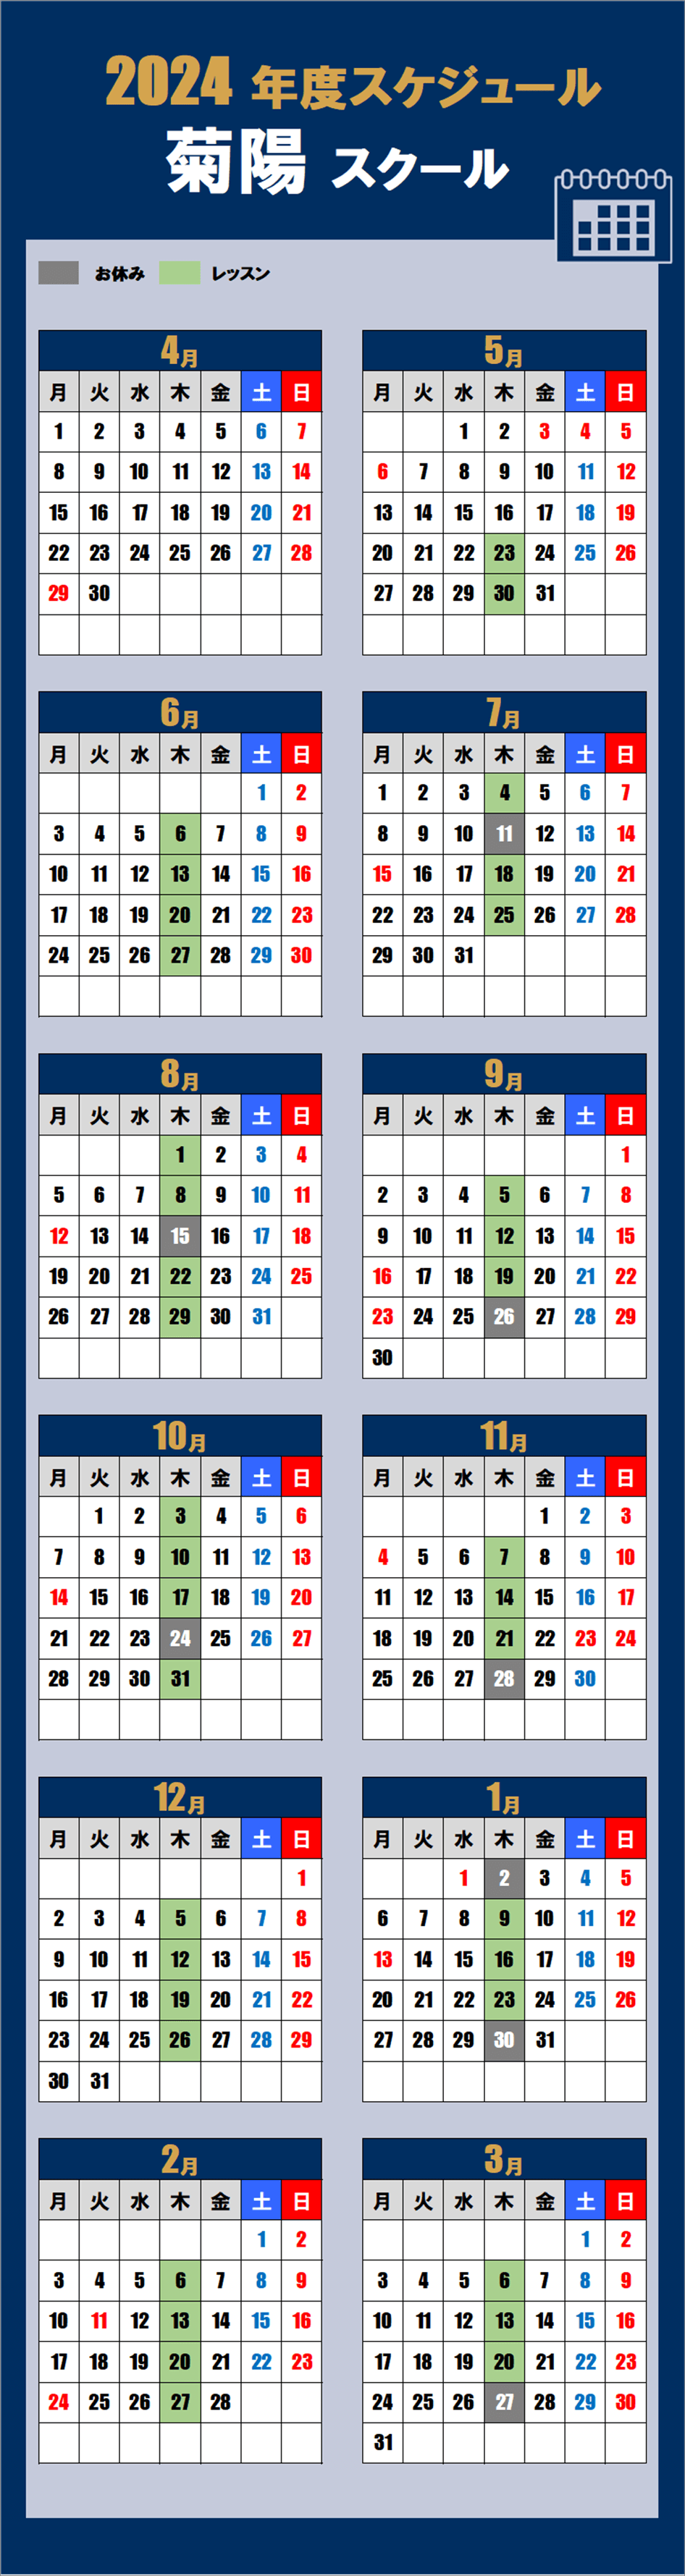 2024熊本スクールカレンダー